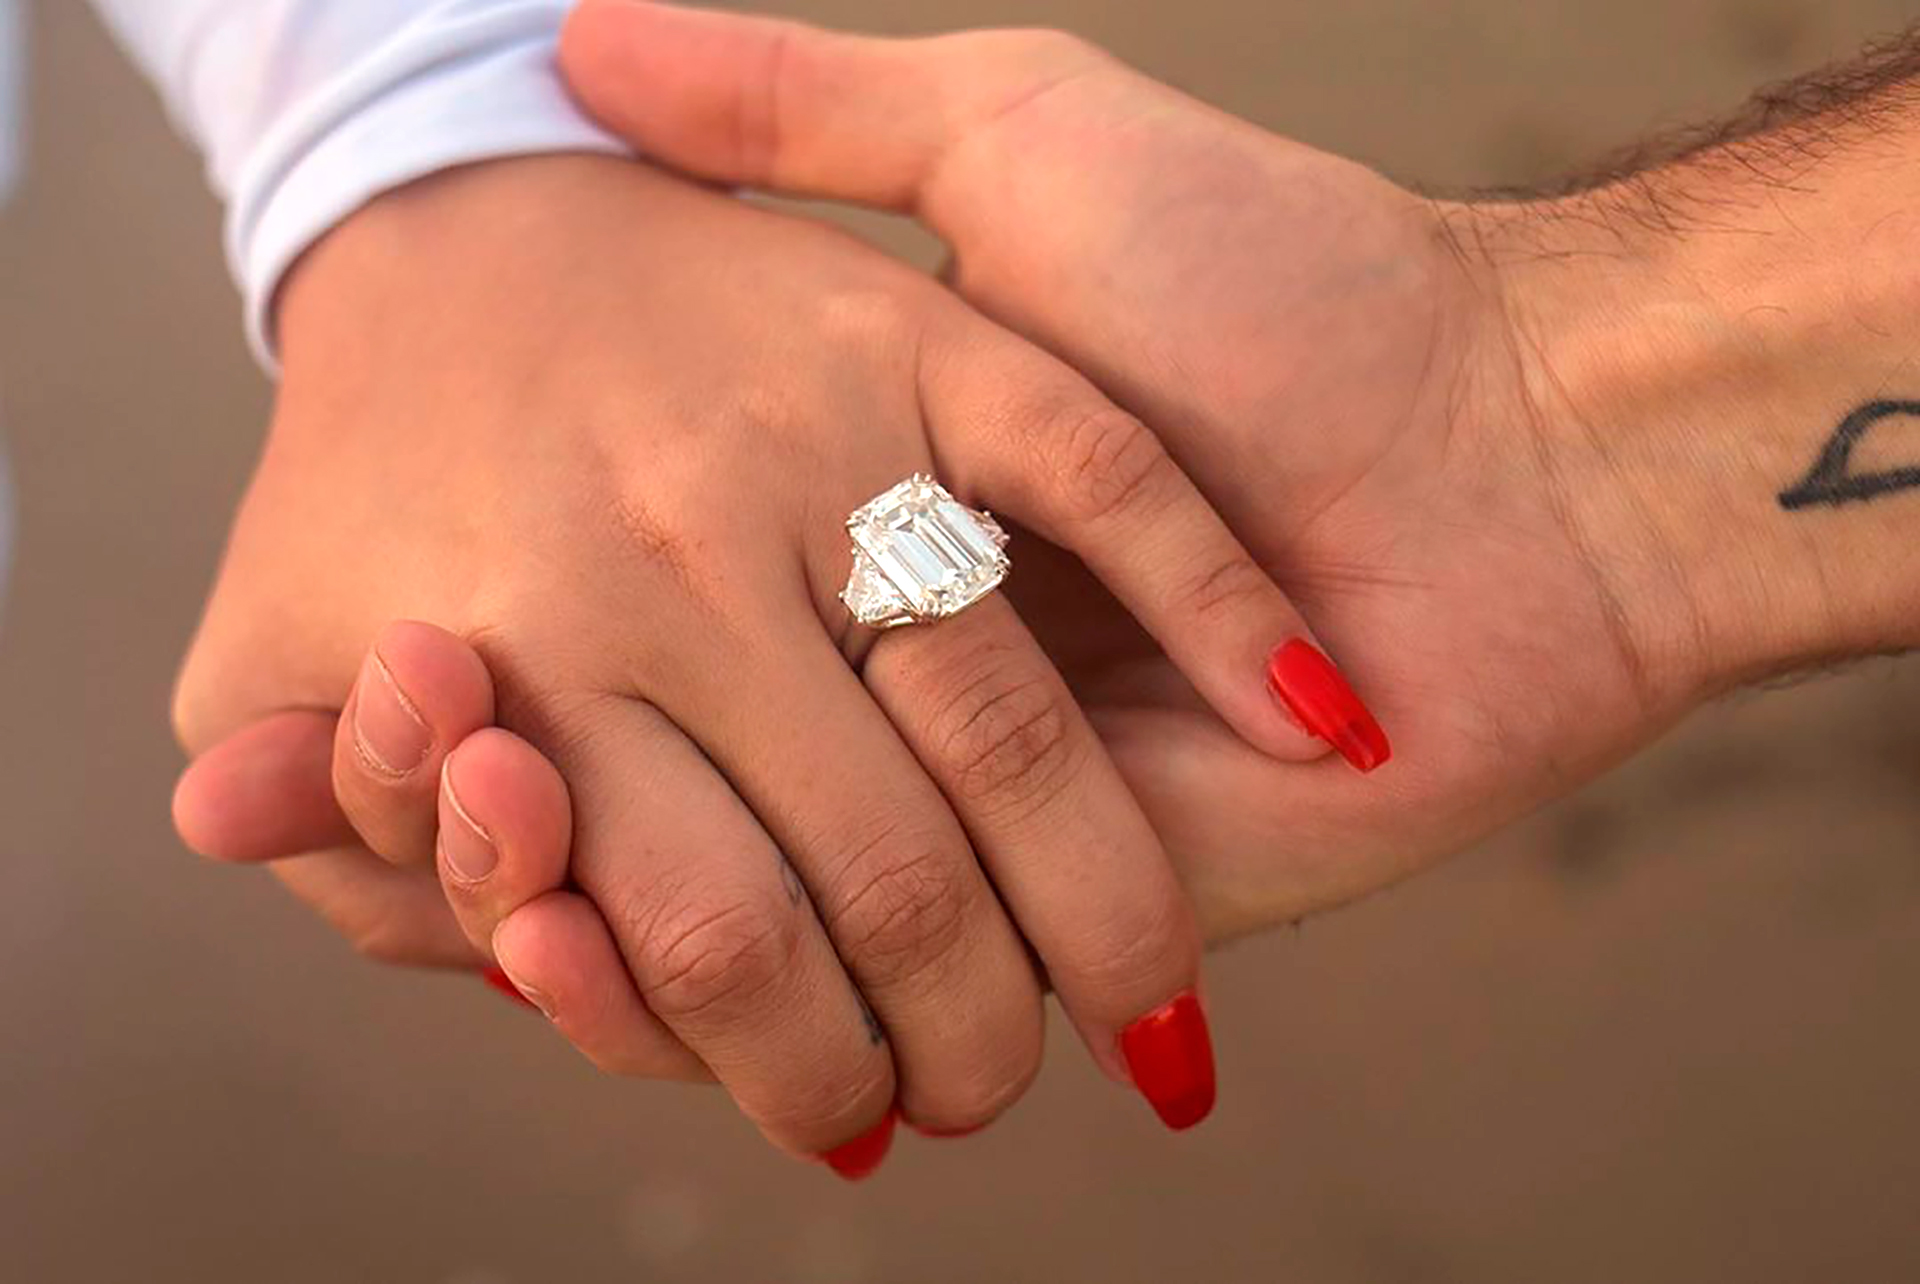 Así era el anillo de compromiso que le dio Max a Demi (Foto: Instagram @maxehrich)